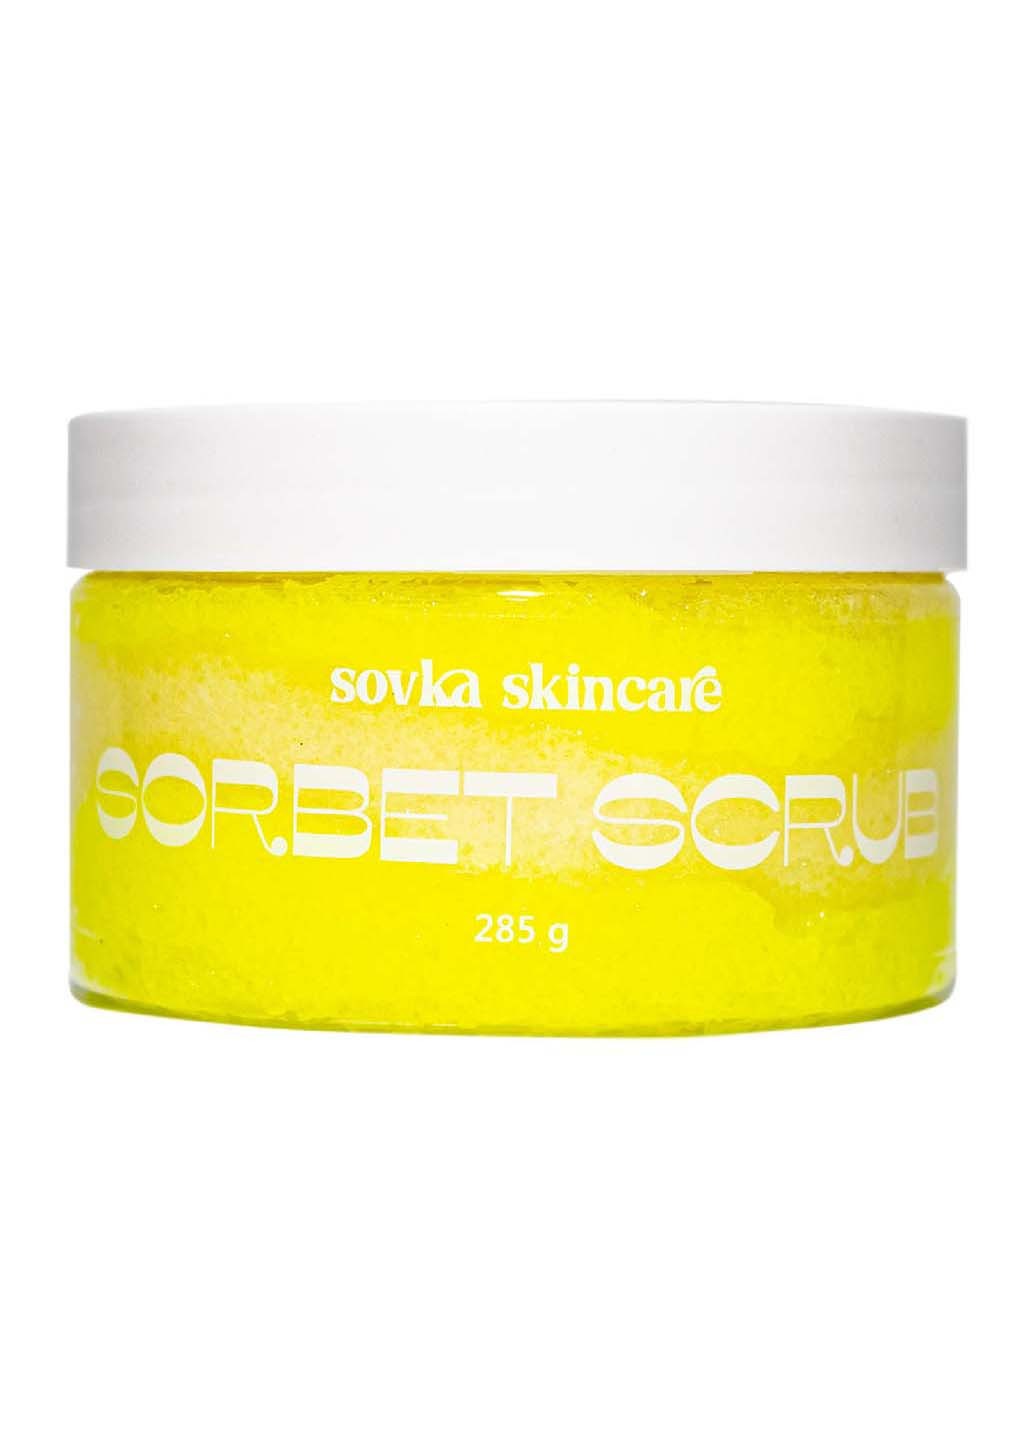 Скраб для тела Sorbet Scrub Milk Shake 285 г Sovka Skincare (264831006)